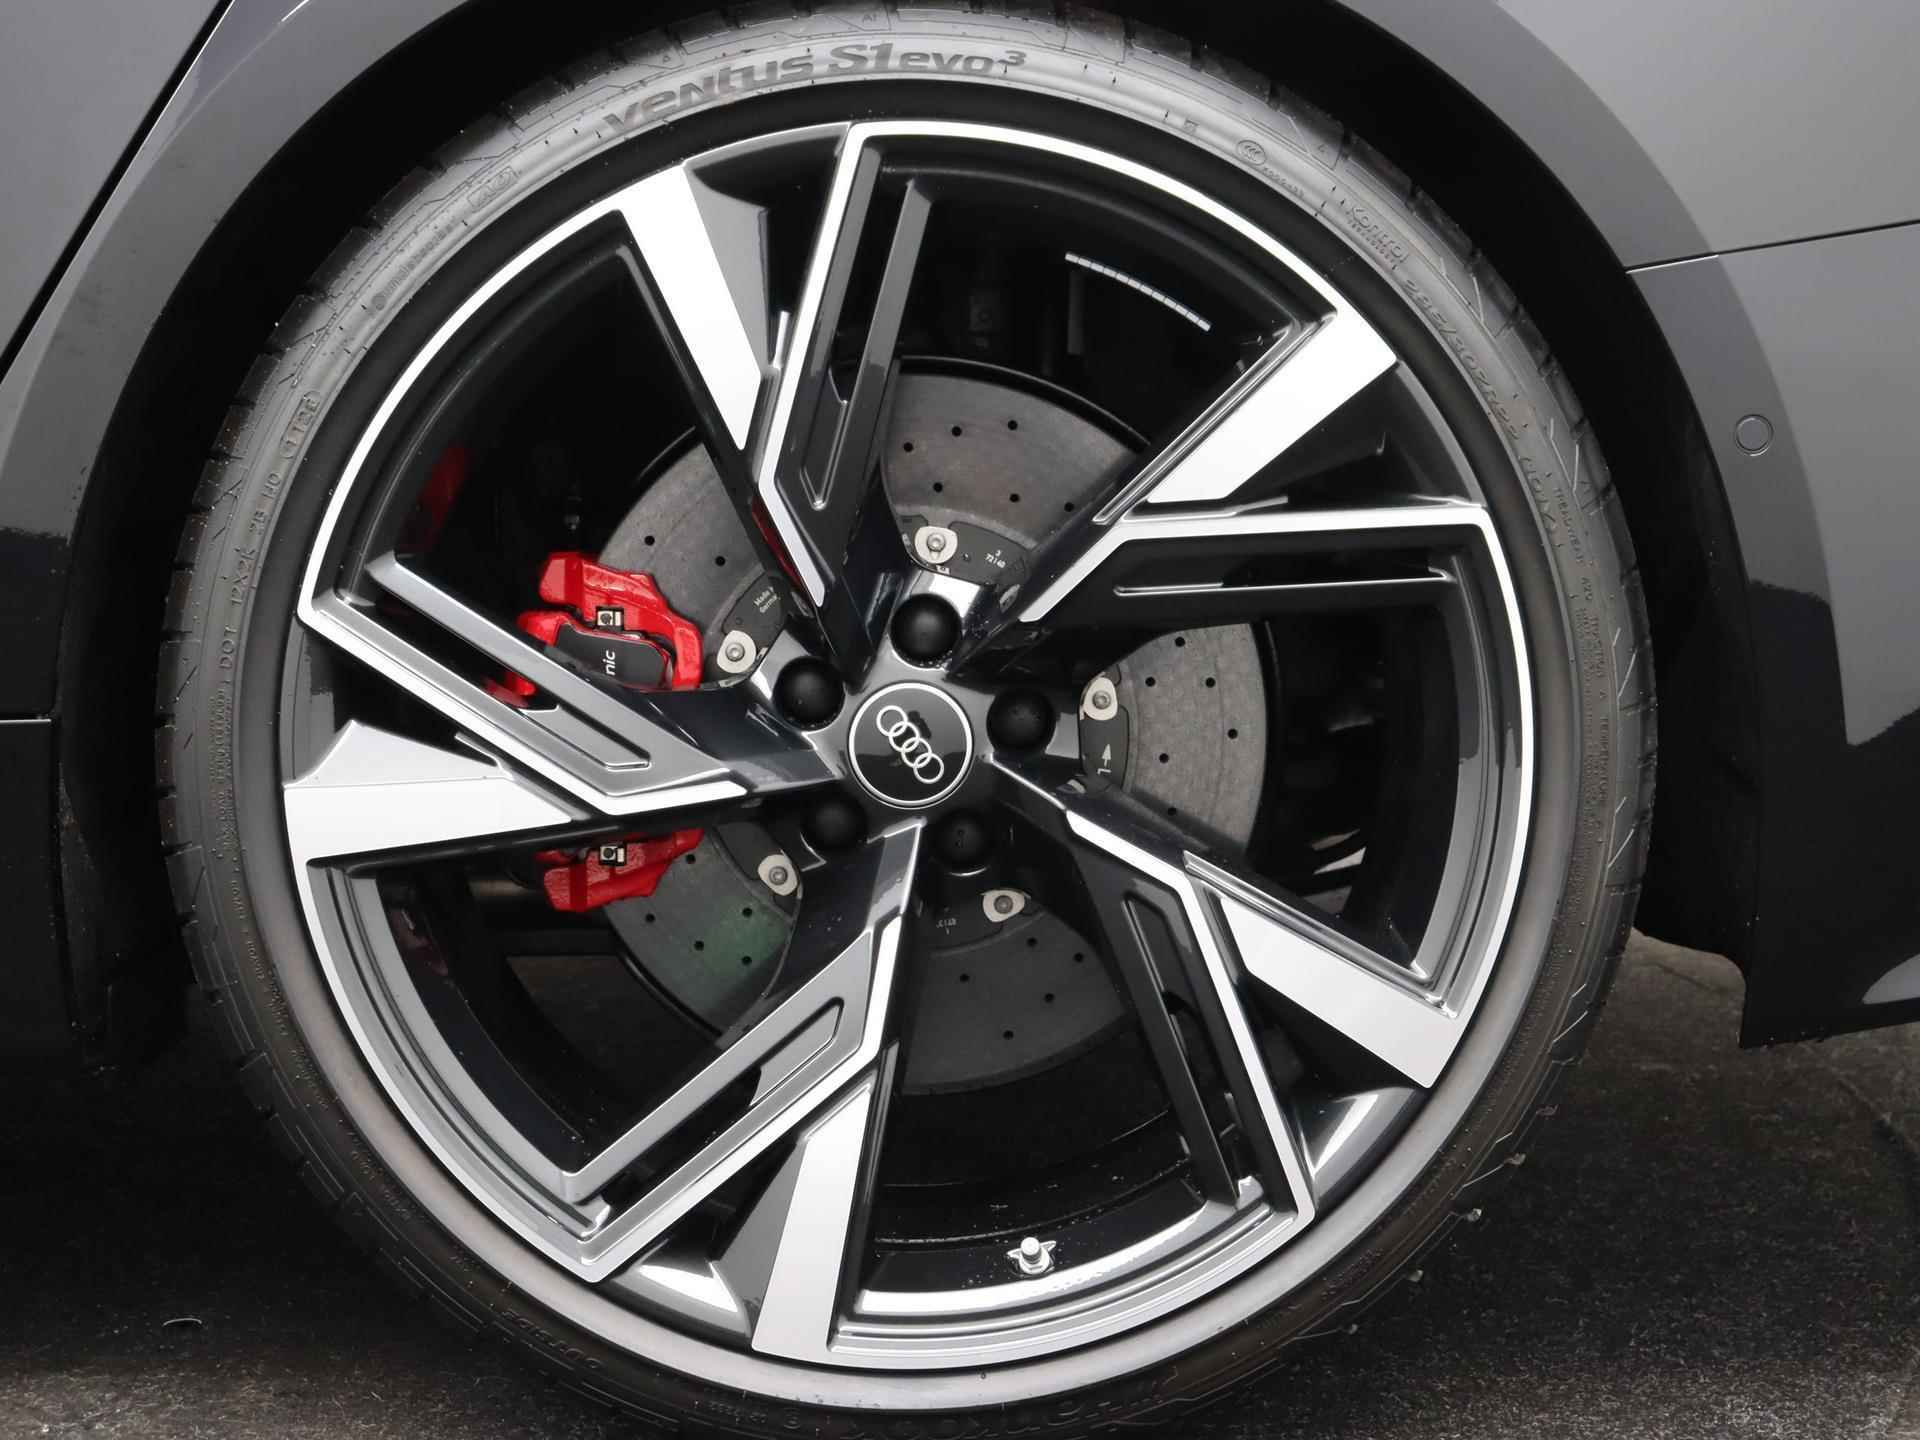 Audi RS6 TFSI quattro 600 PK | Head-up display | Bang & Olufsen Soundsystem | 22 inch lm velgen | RS Dynamic Pakket Plus | RS Design pakket Rood |Optiekpakket Zwart Plus | Panorama dak | RS Sportuitlaat | Keramische remschijven Rood | RS Sportonderstel Plus | Servosluiting deuren | Nu € 36.129,- ACTIEKORTING! | DIRECT LEVERBAAR! | NIEUWE AUTO! | - 11/35